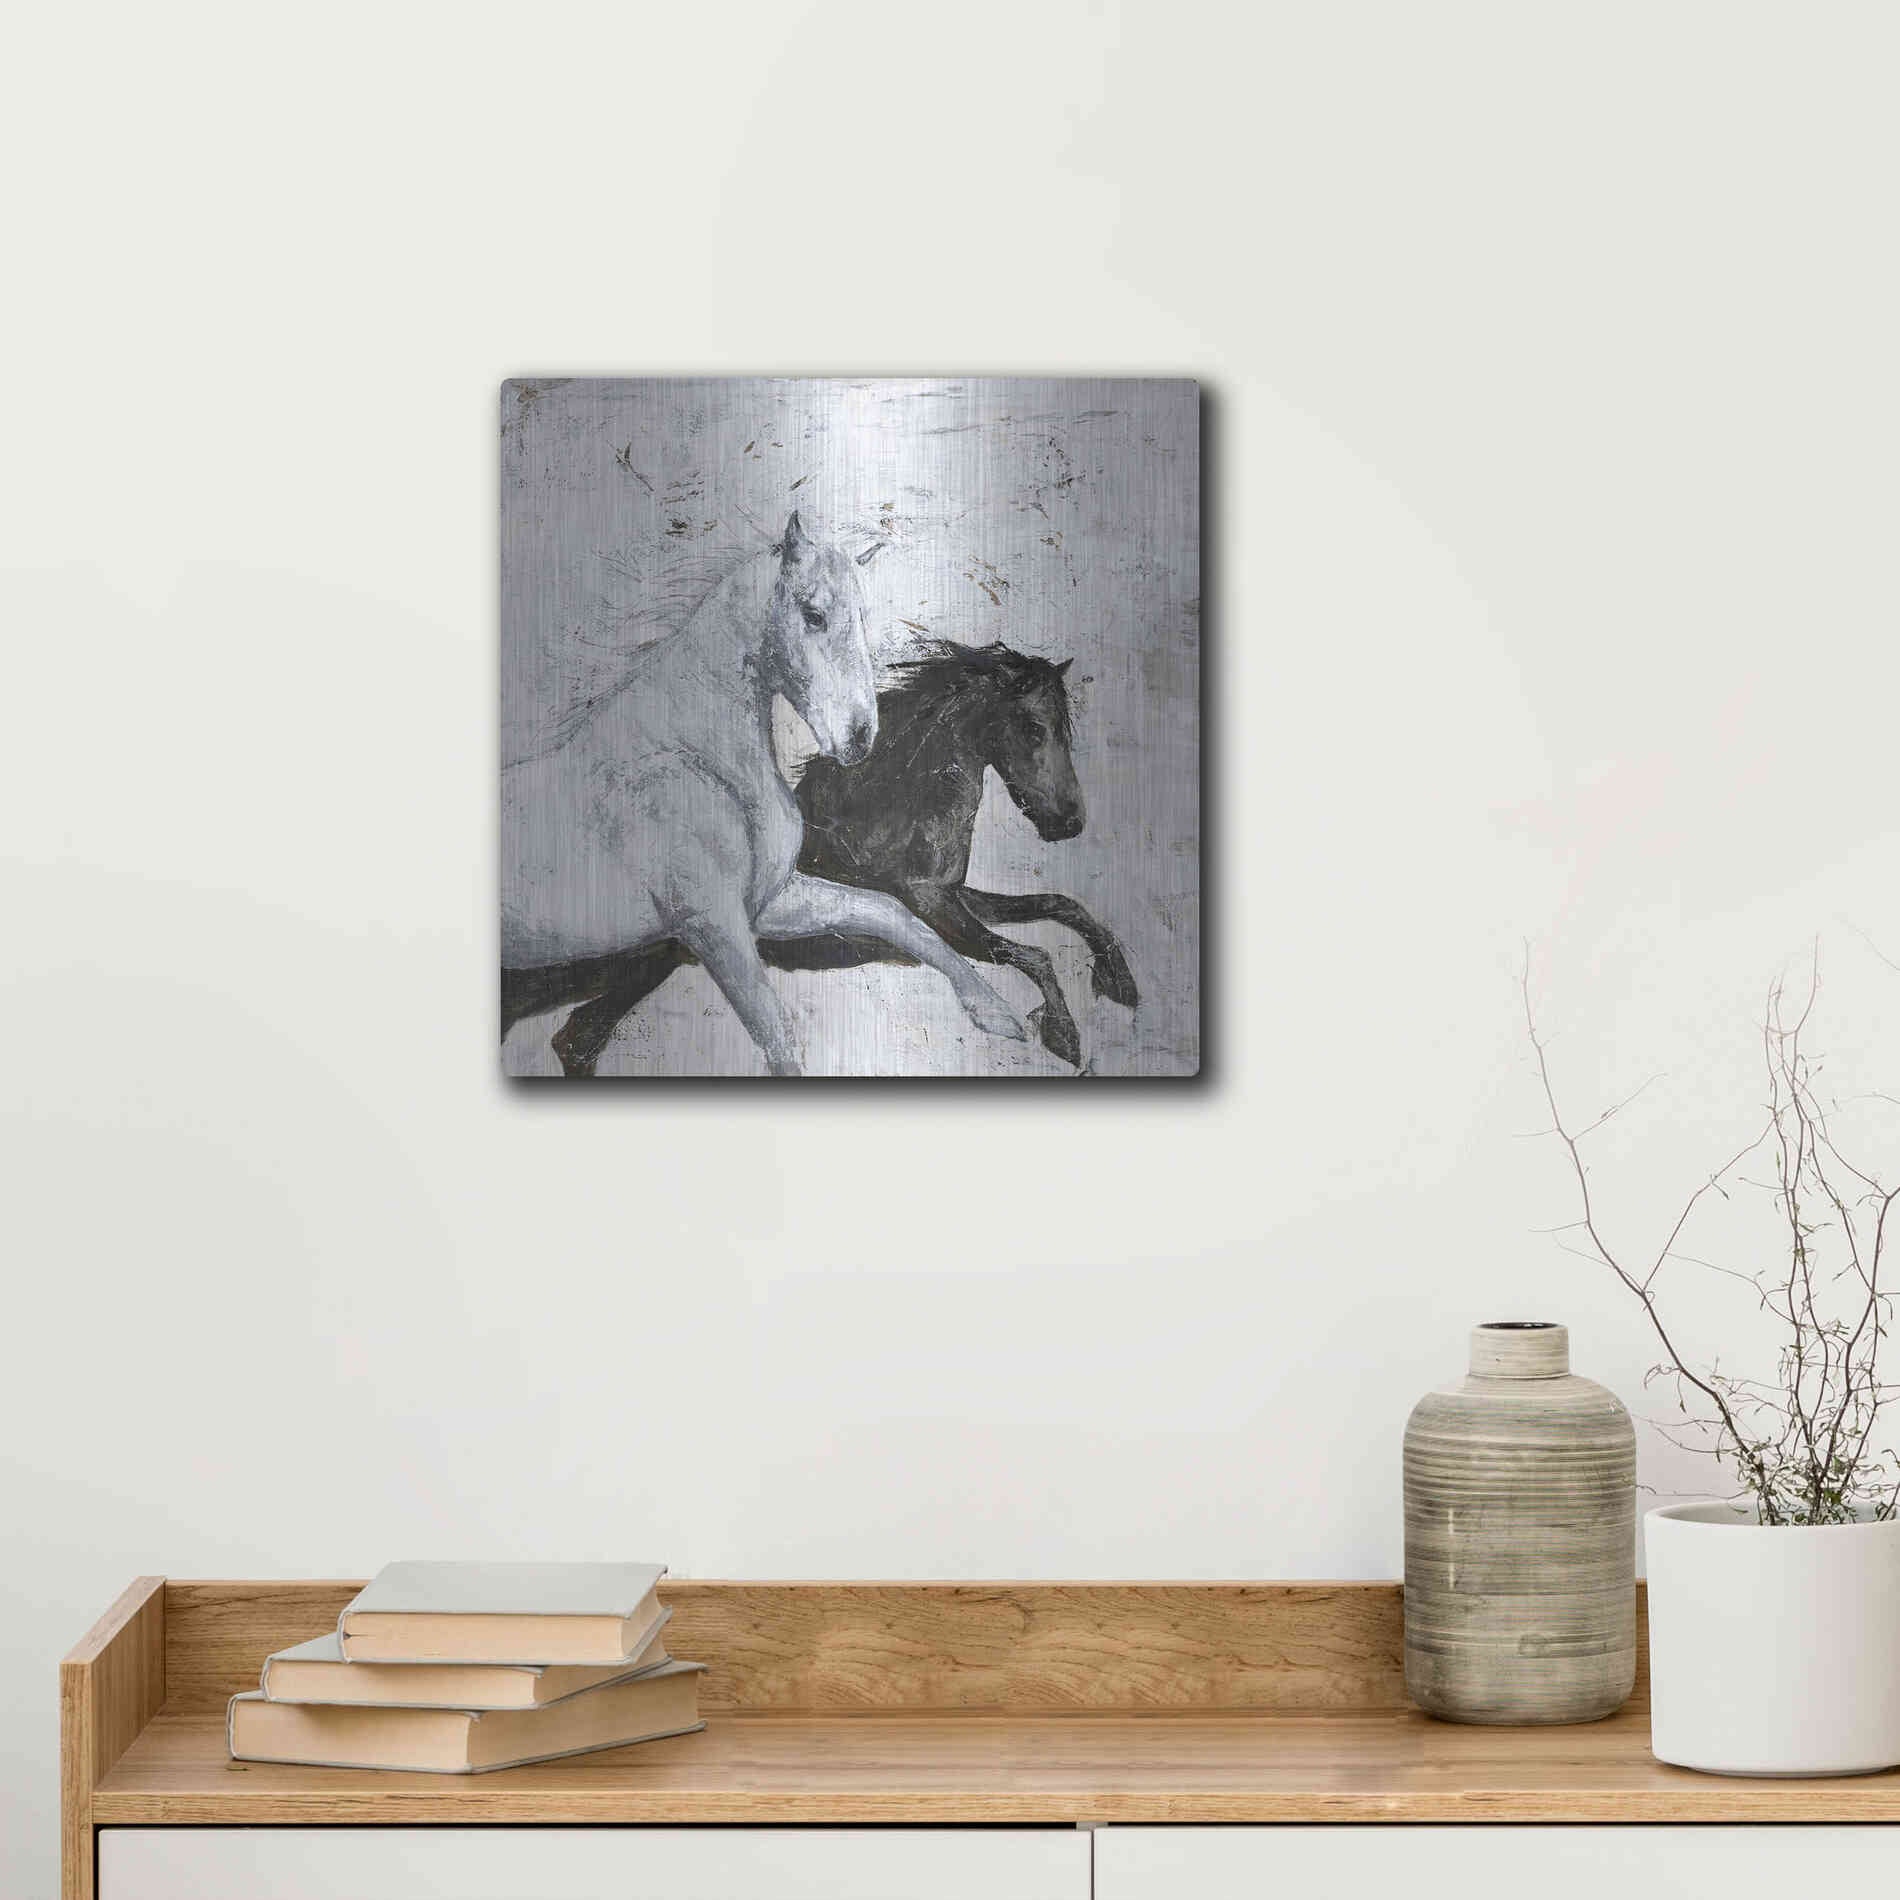 Luxe Metal Art 'Wild Horse 2' by Design Fabrikken, Metal Wall Art,12x12